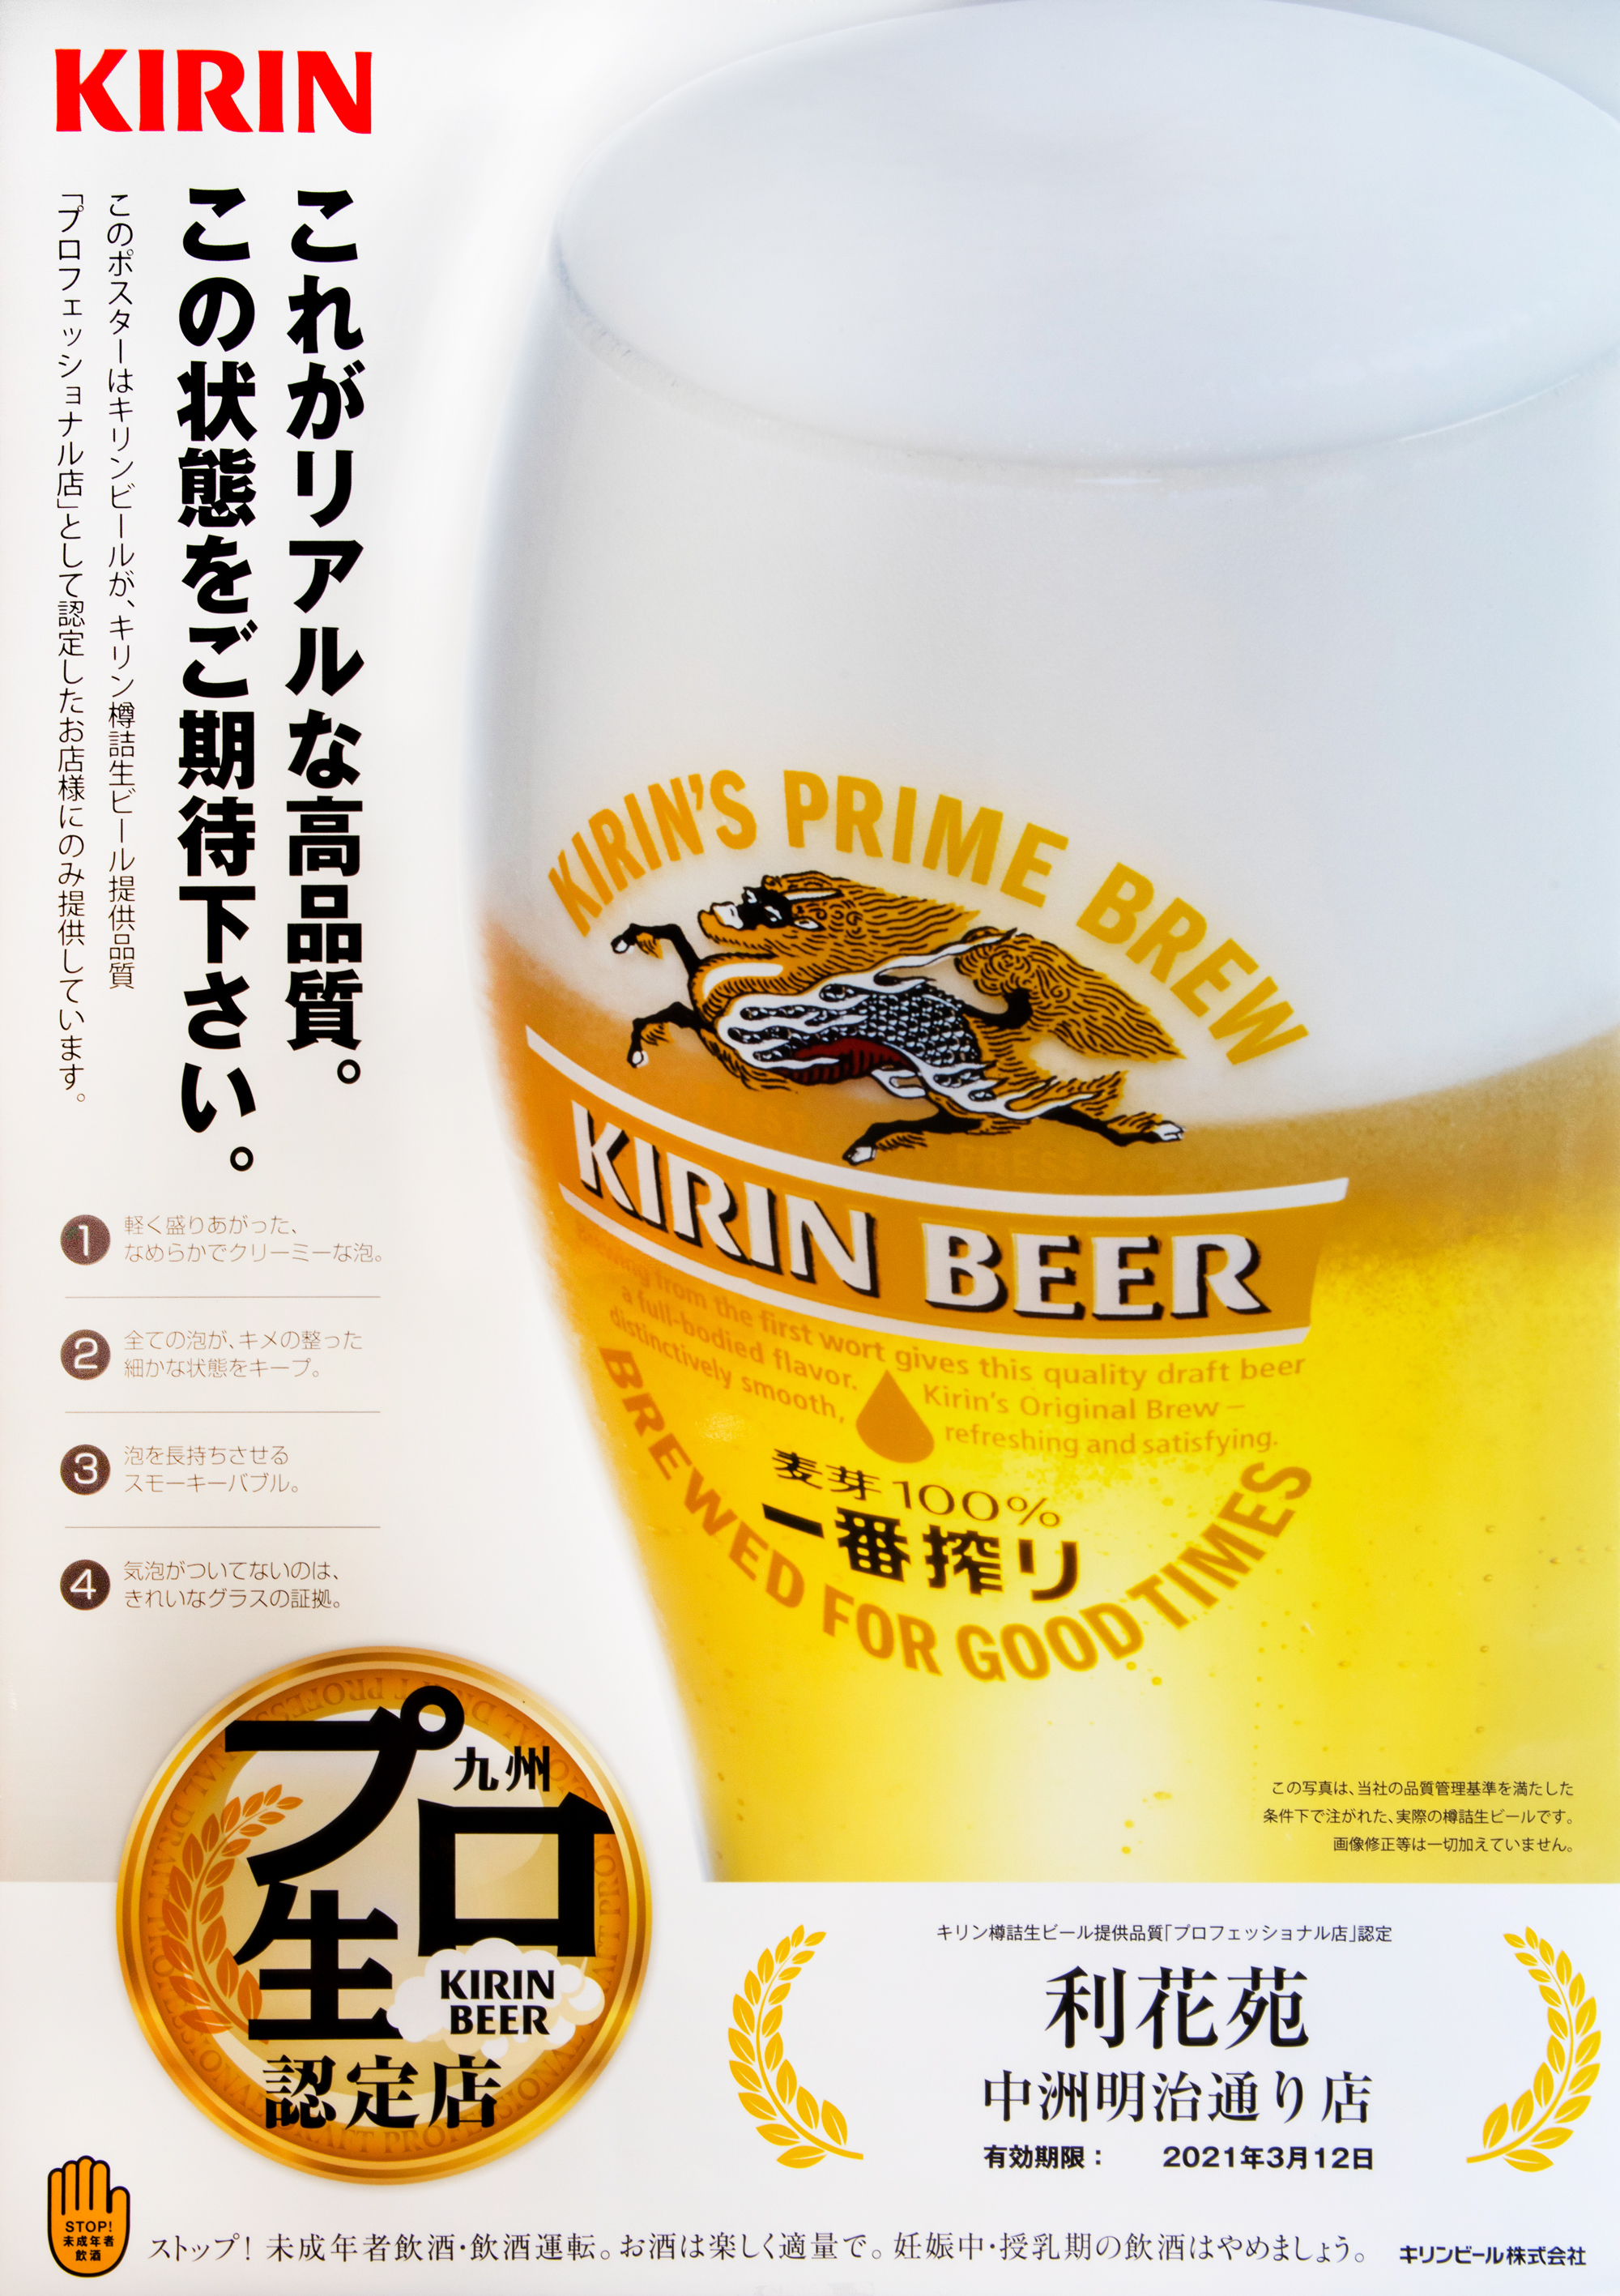 キリン樽詰生ビール提供品質「プロフェッショナル 店」